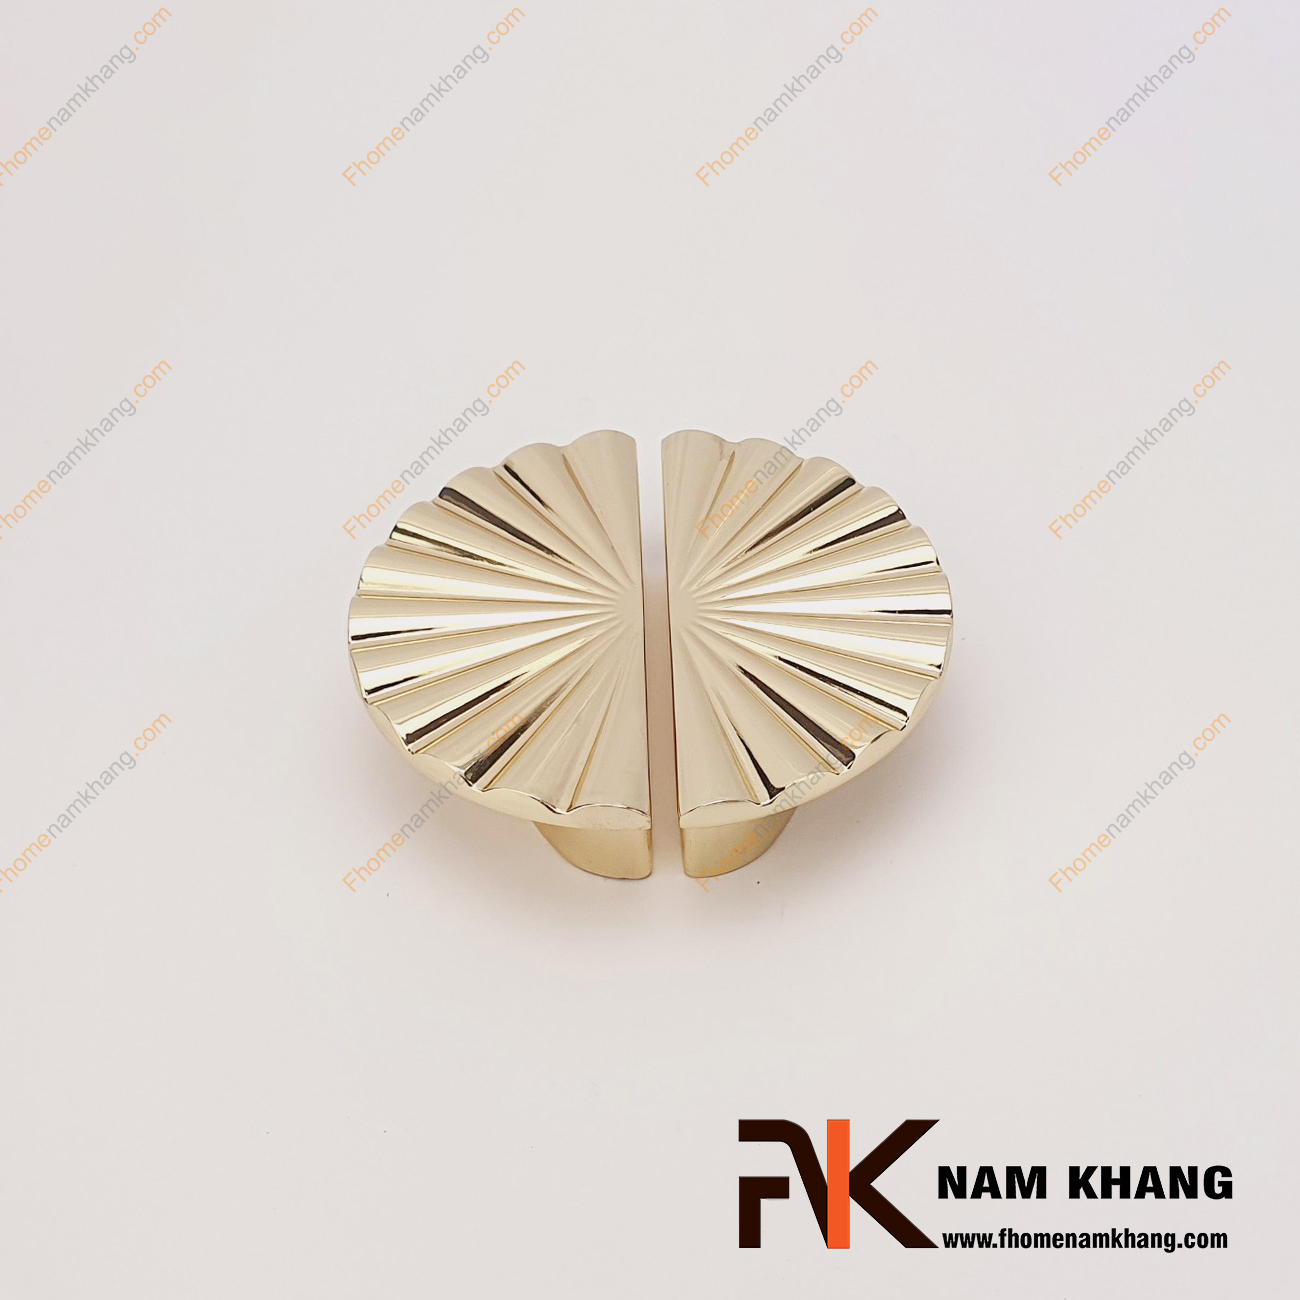 Tay nắm tủ dạng bán nguyệt màu vàng bóng NK286Q-64V là dạng tay nắm tủ bán nguyệt ghép đôi độc đáo. Sản phẩm có thiết kế cong góc tròn dạng quạt và có độ dày cho cảm nắm cầm kéo thoải mái. 